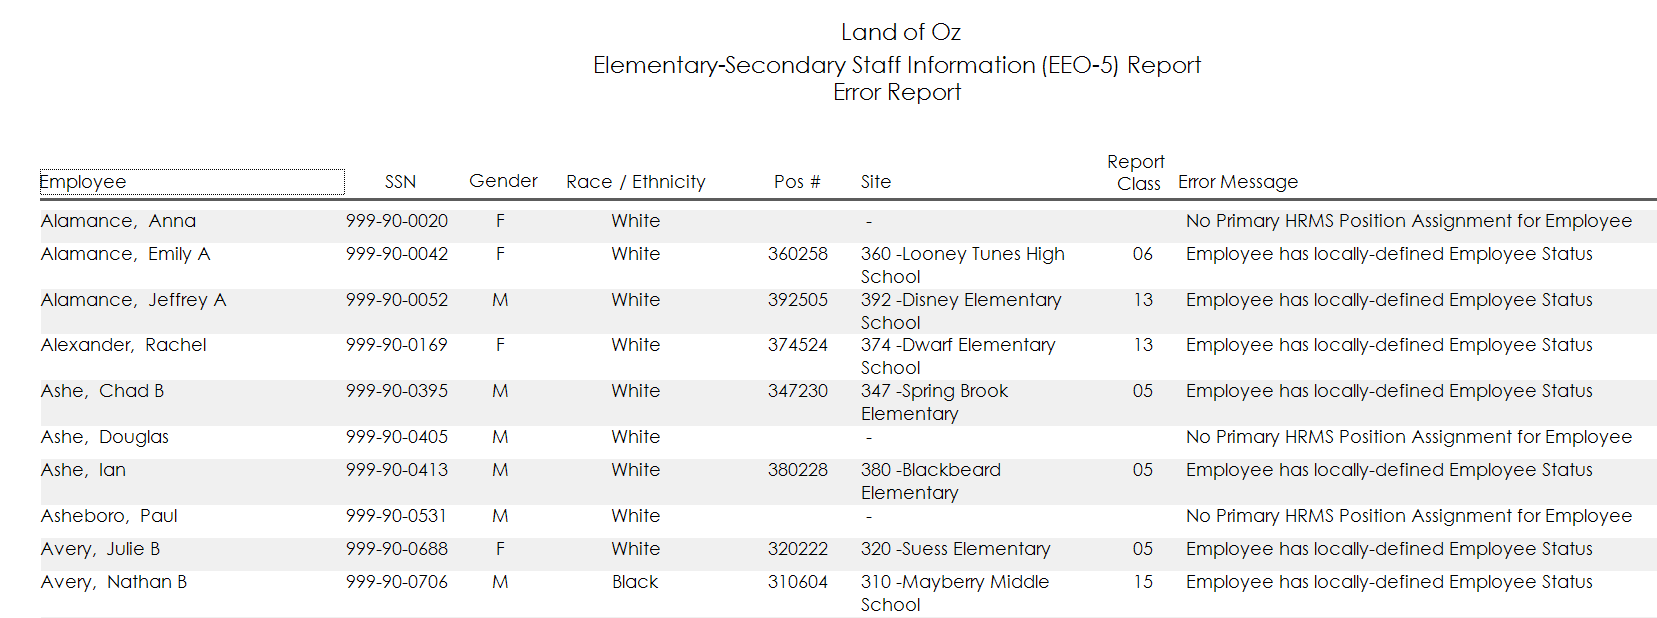 Sample of EEO-5 Error Report